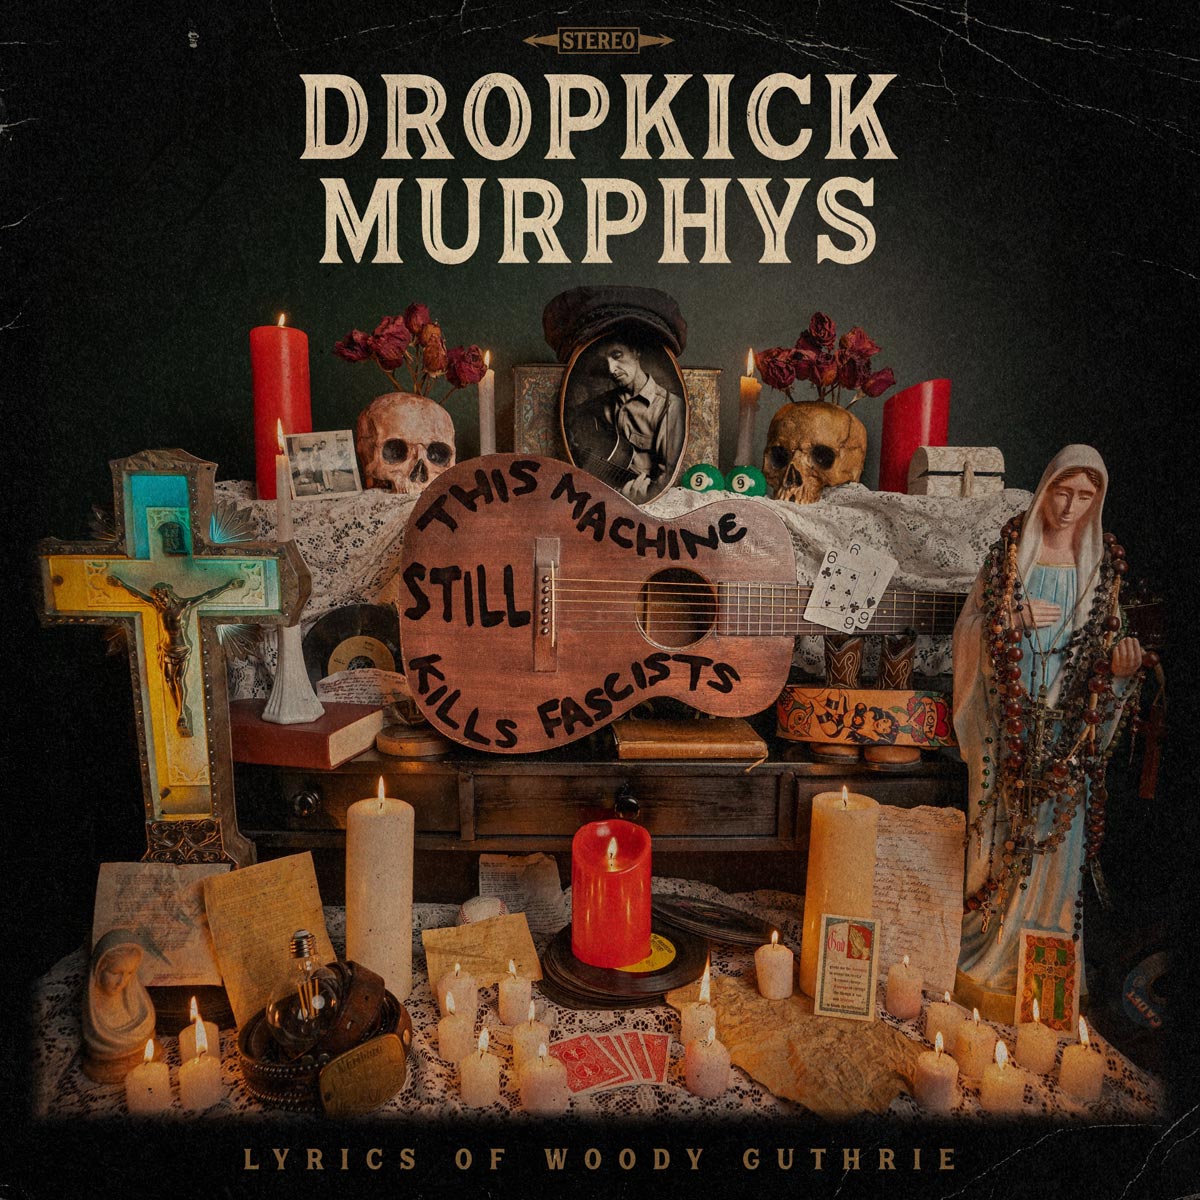 Dropkick Murphys - This Machine Still Kills Facists - LP